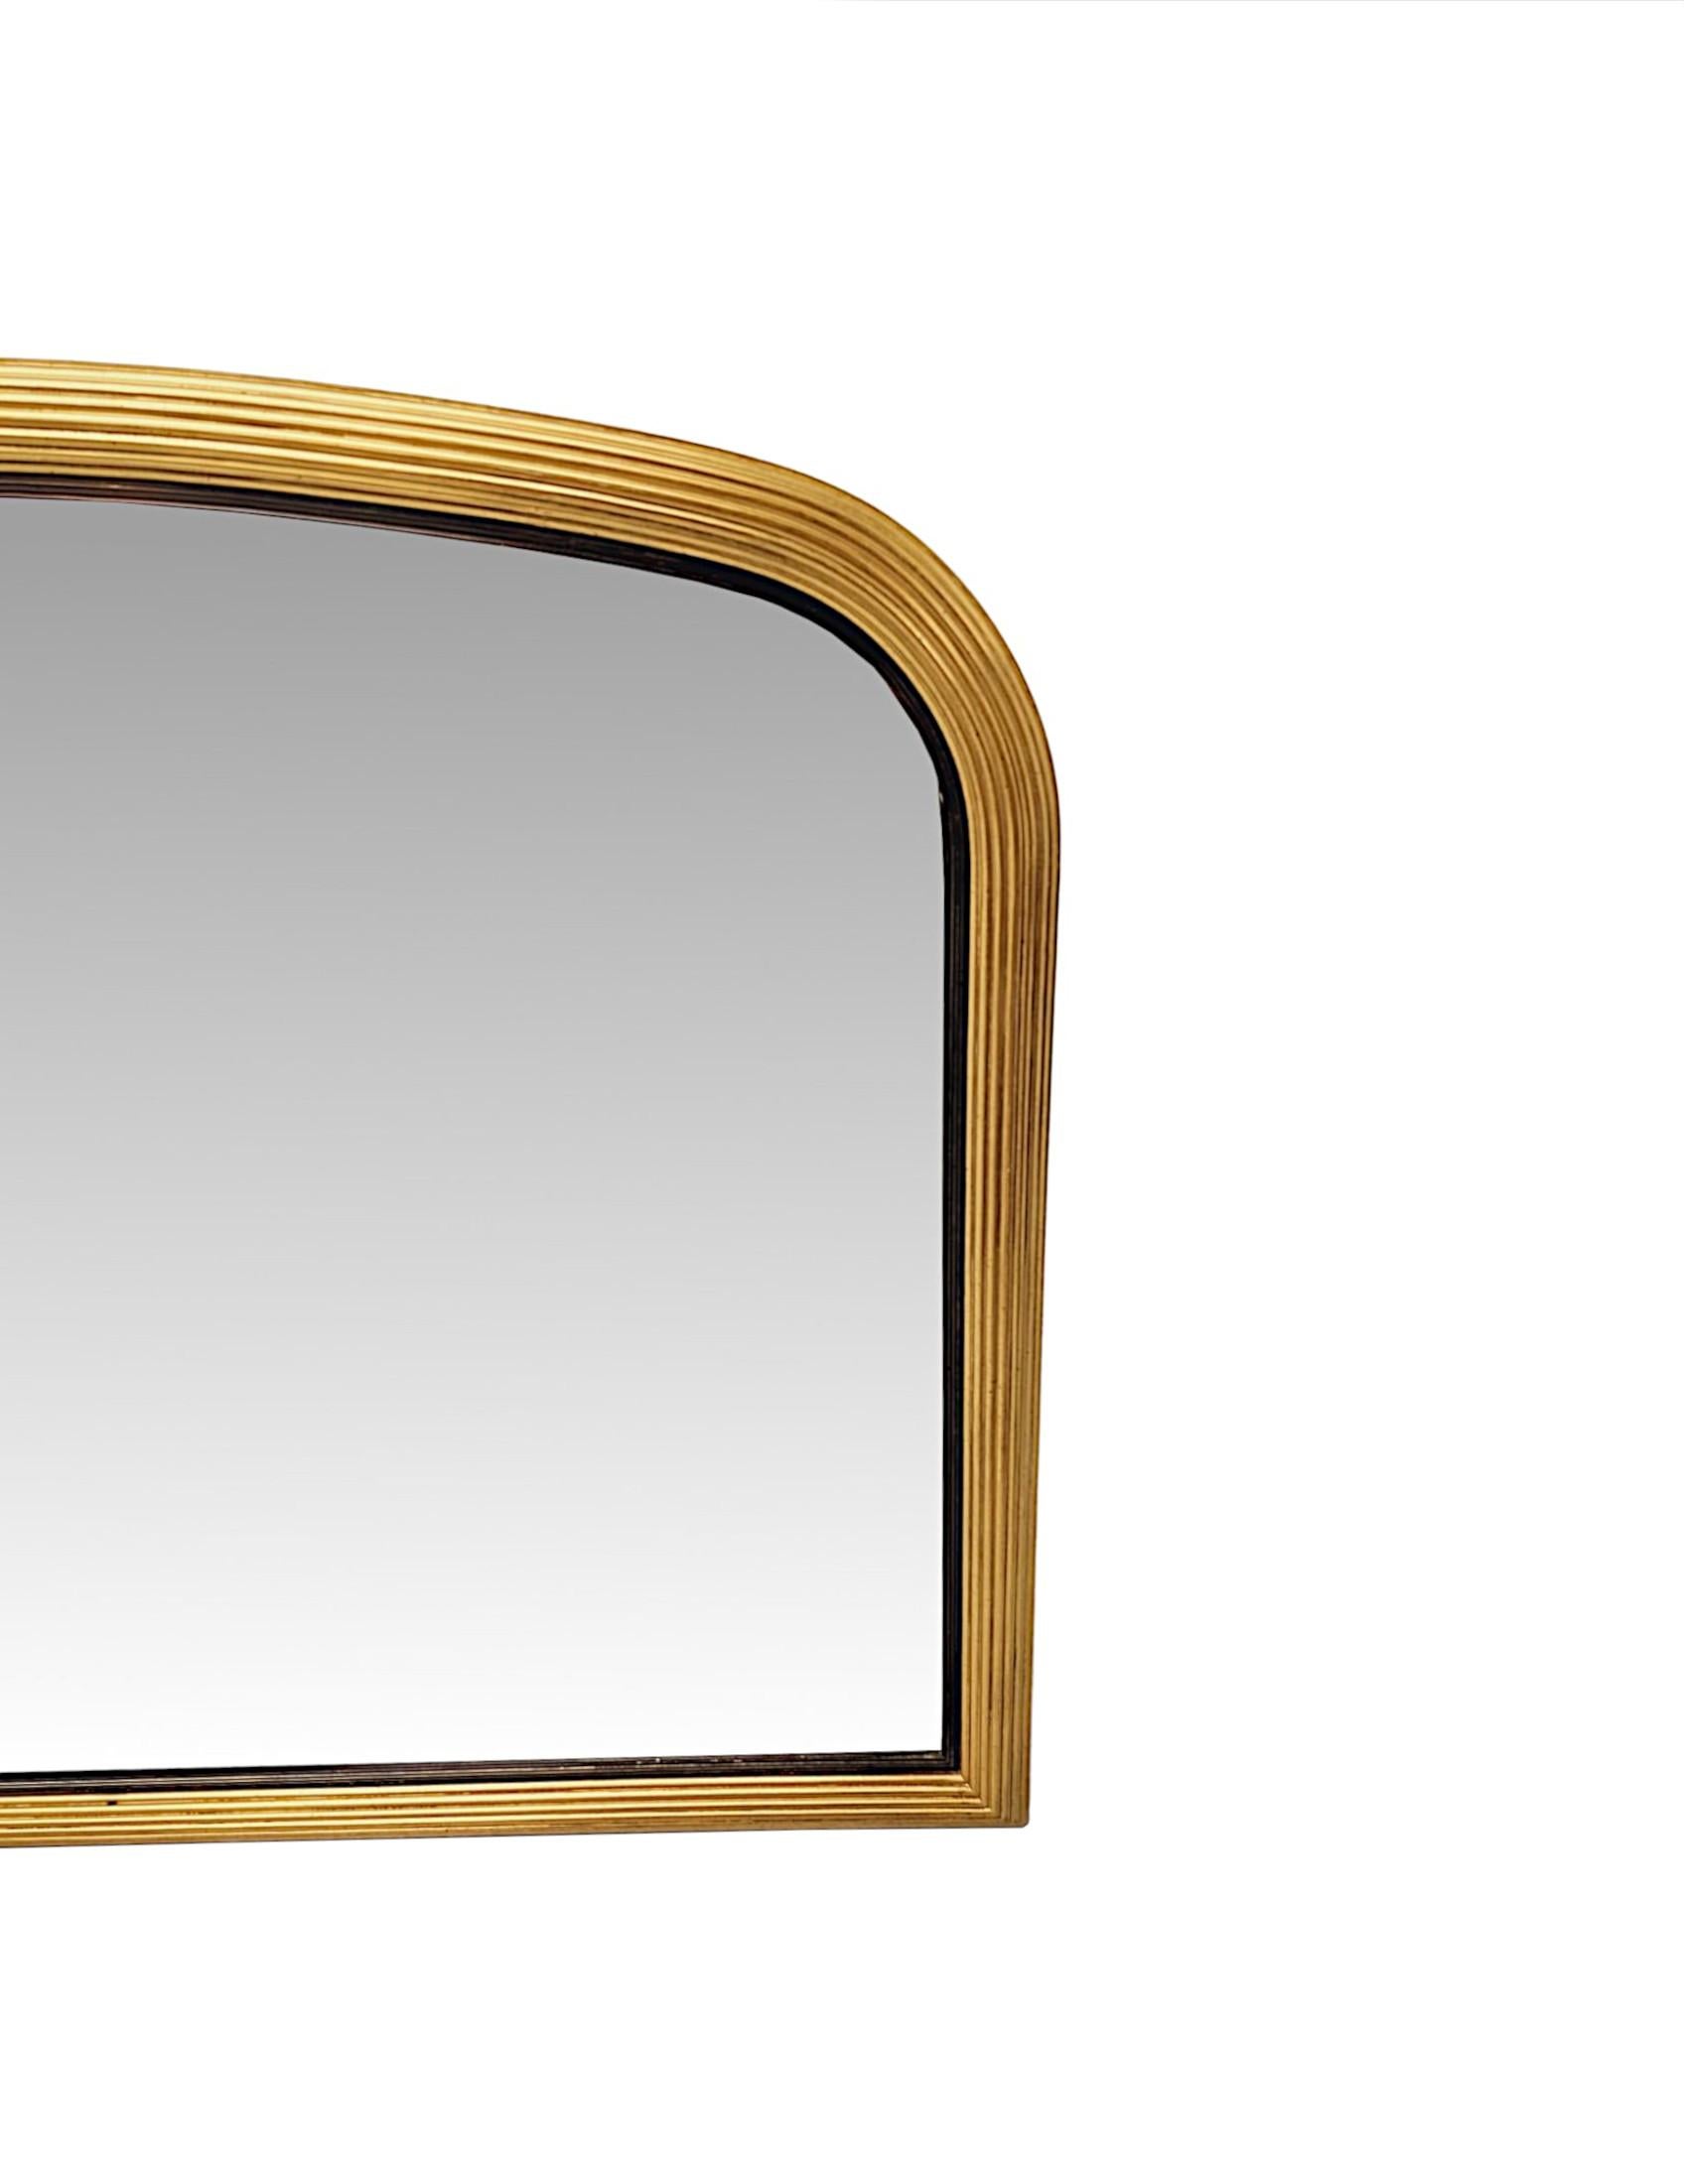 Un très beau et inhabituel miroir à trumeau en bois doré de l'époque Elegardienne, d'une élégante simplicité, d'une qualité exceptionnelle et de proportions basses et larges.  La plaque de verre biseautée et façonnée, de forme arquée, est enchâssée